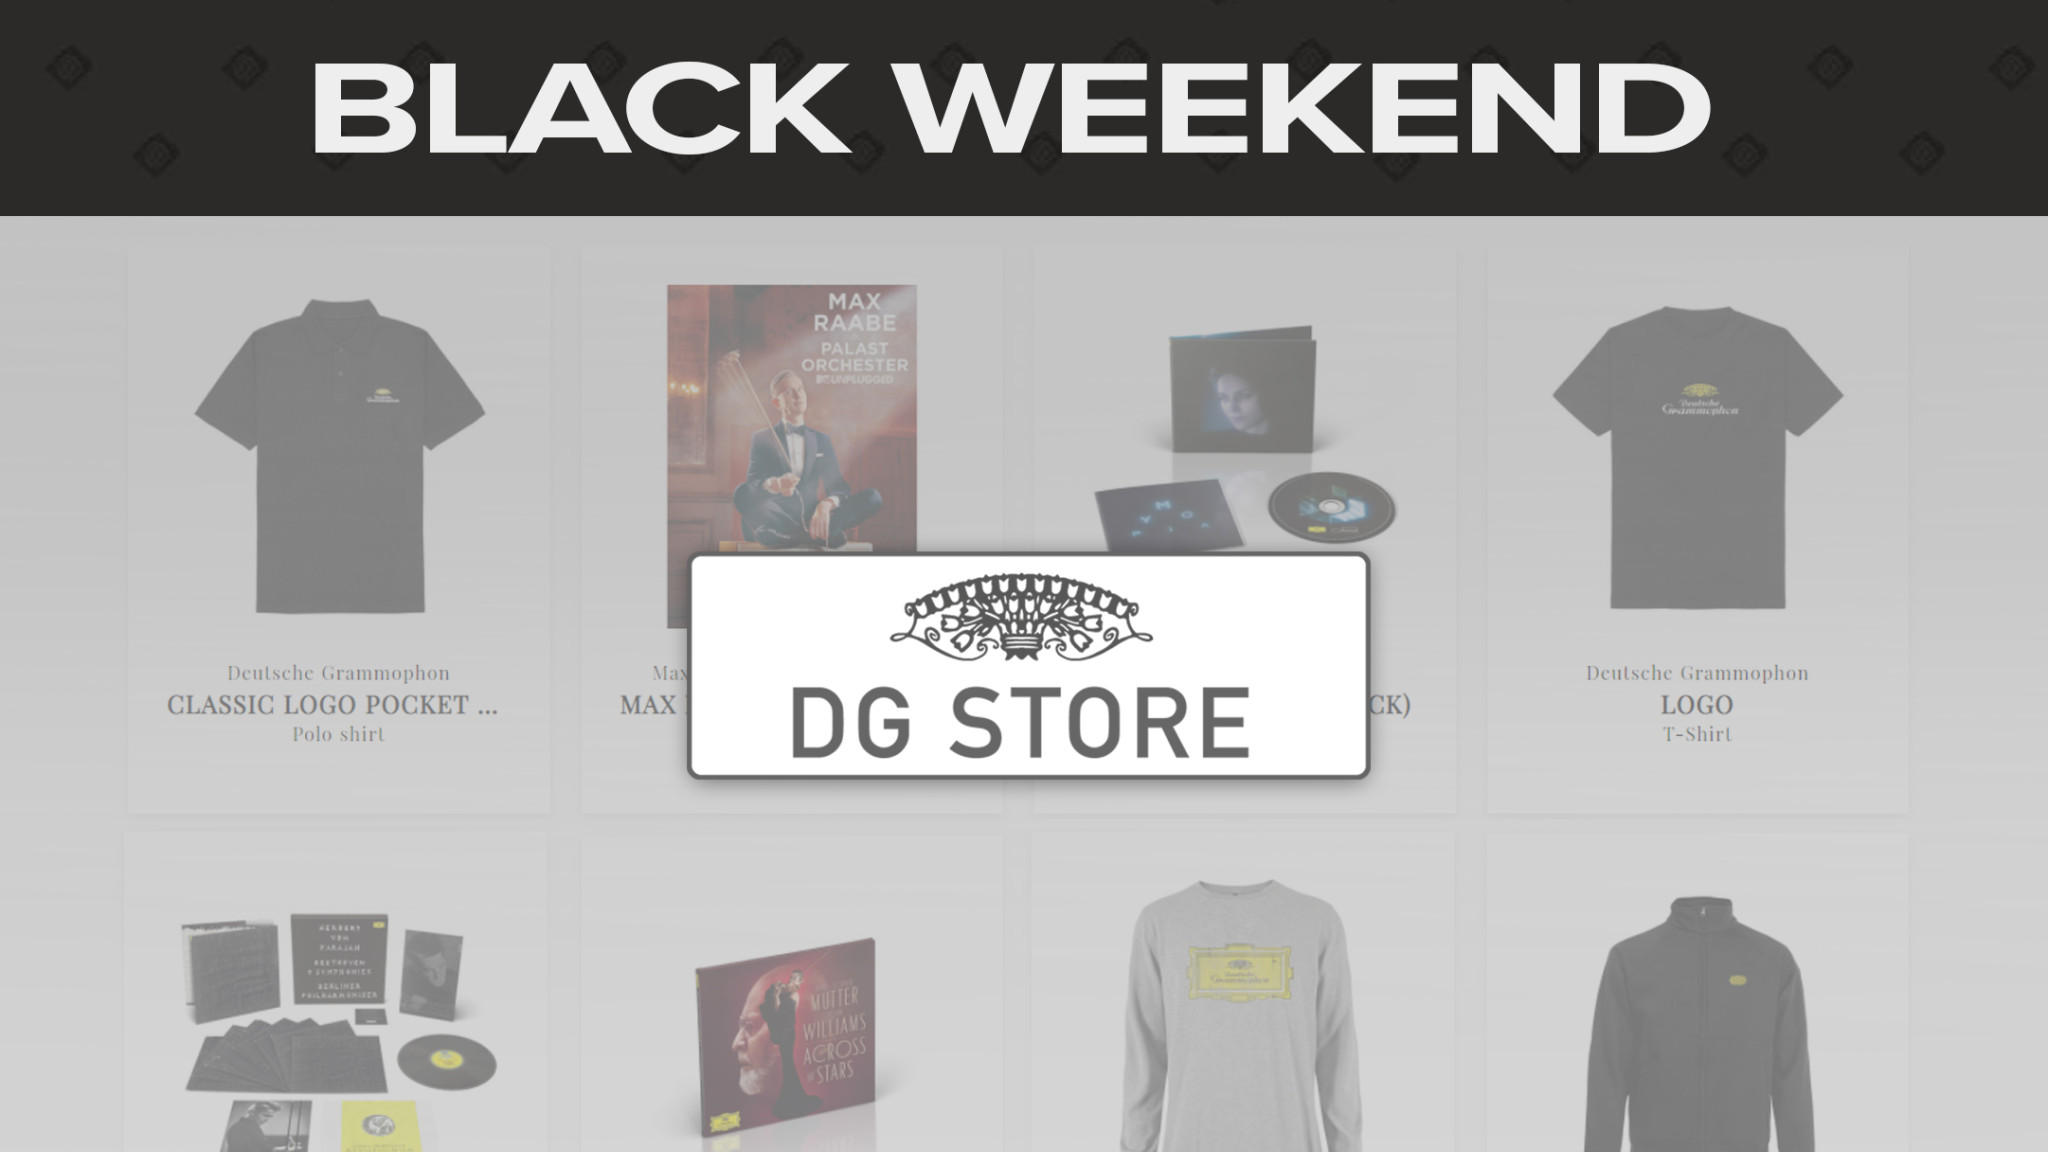 DG Store Black Friday